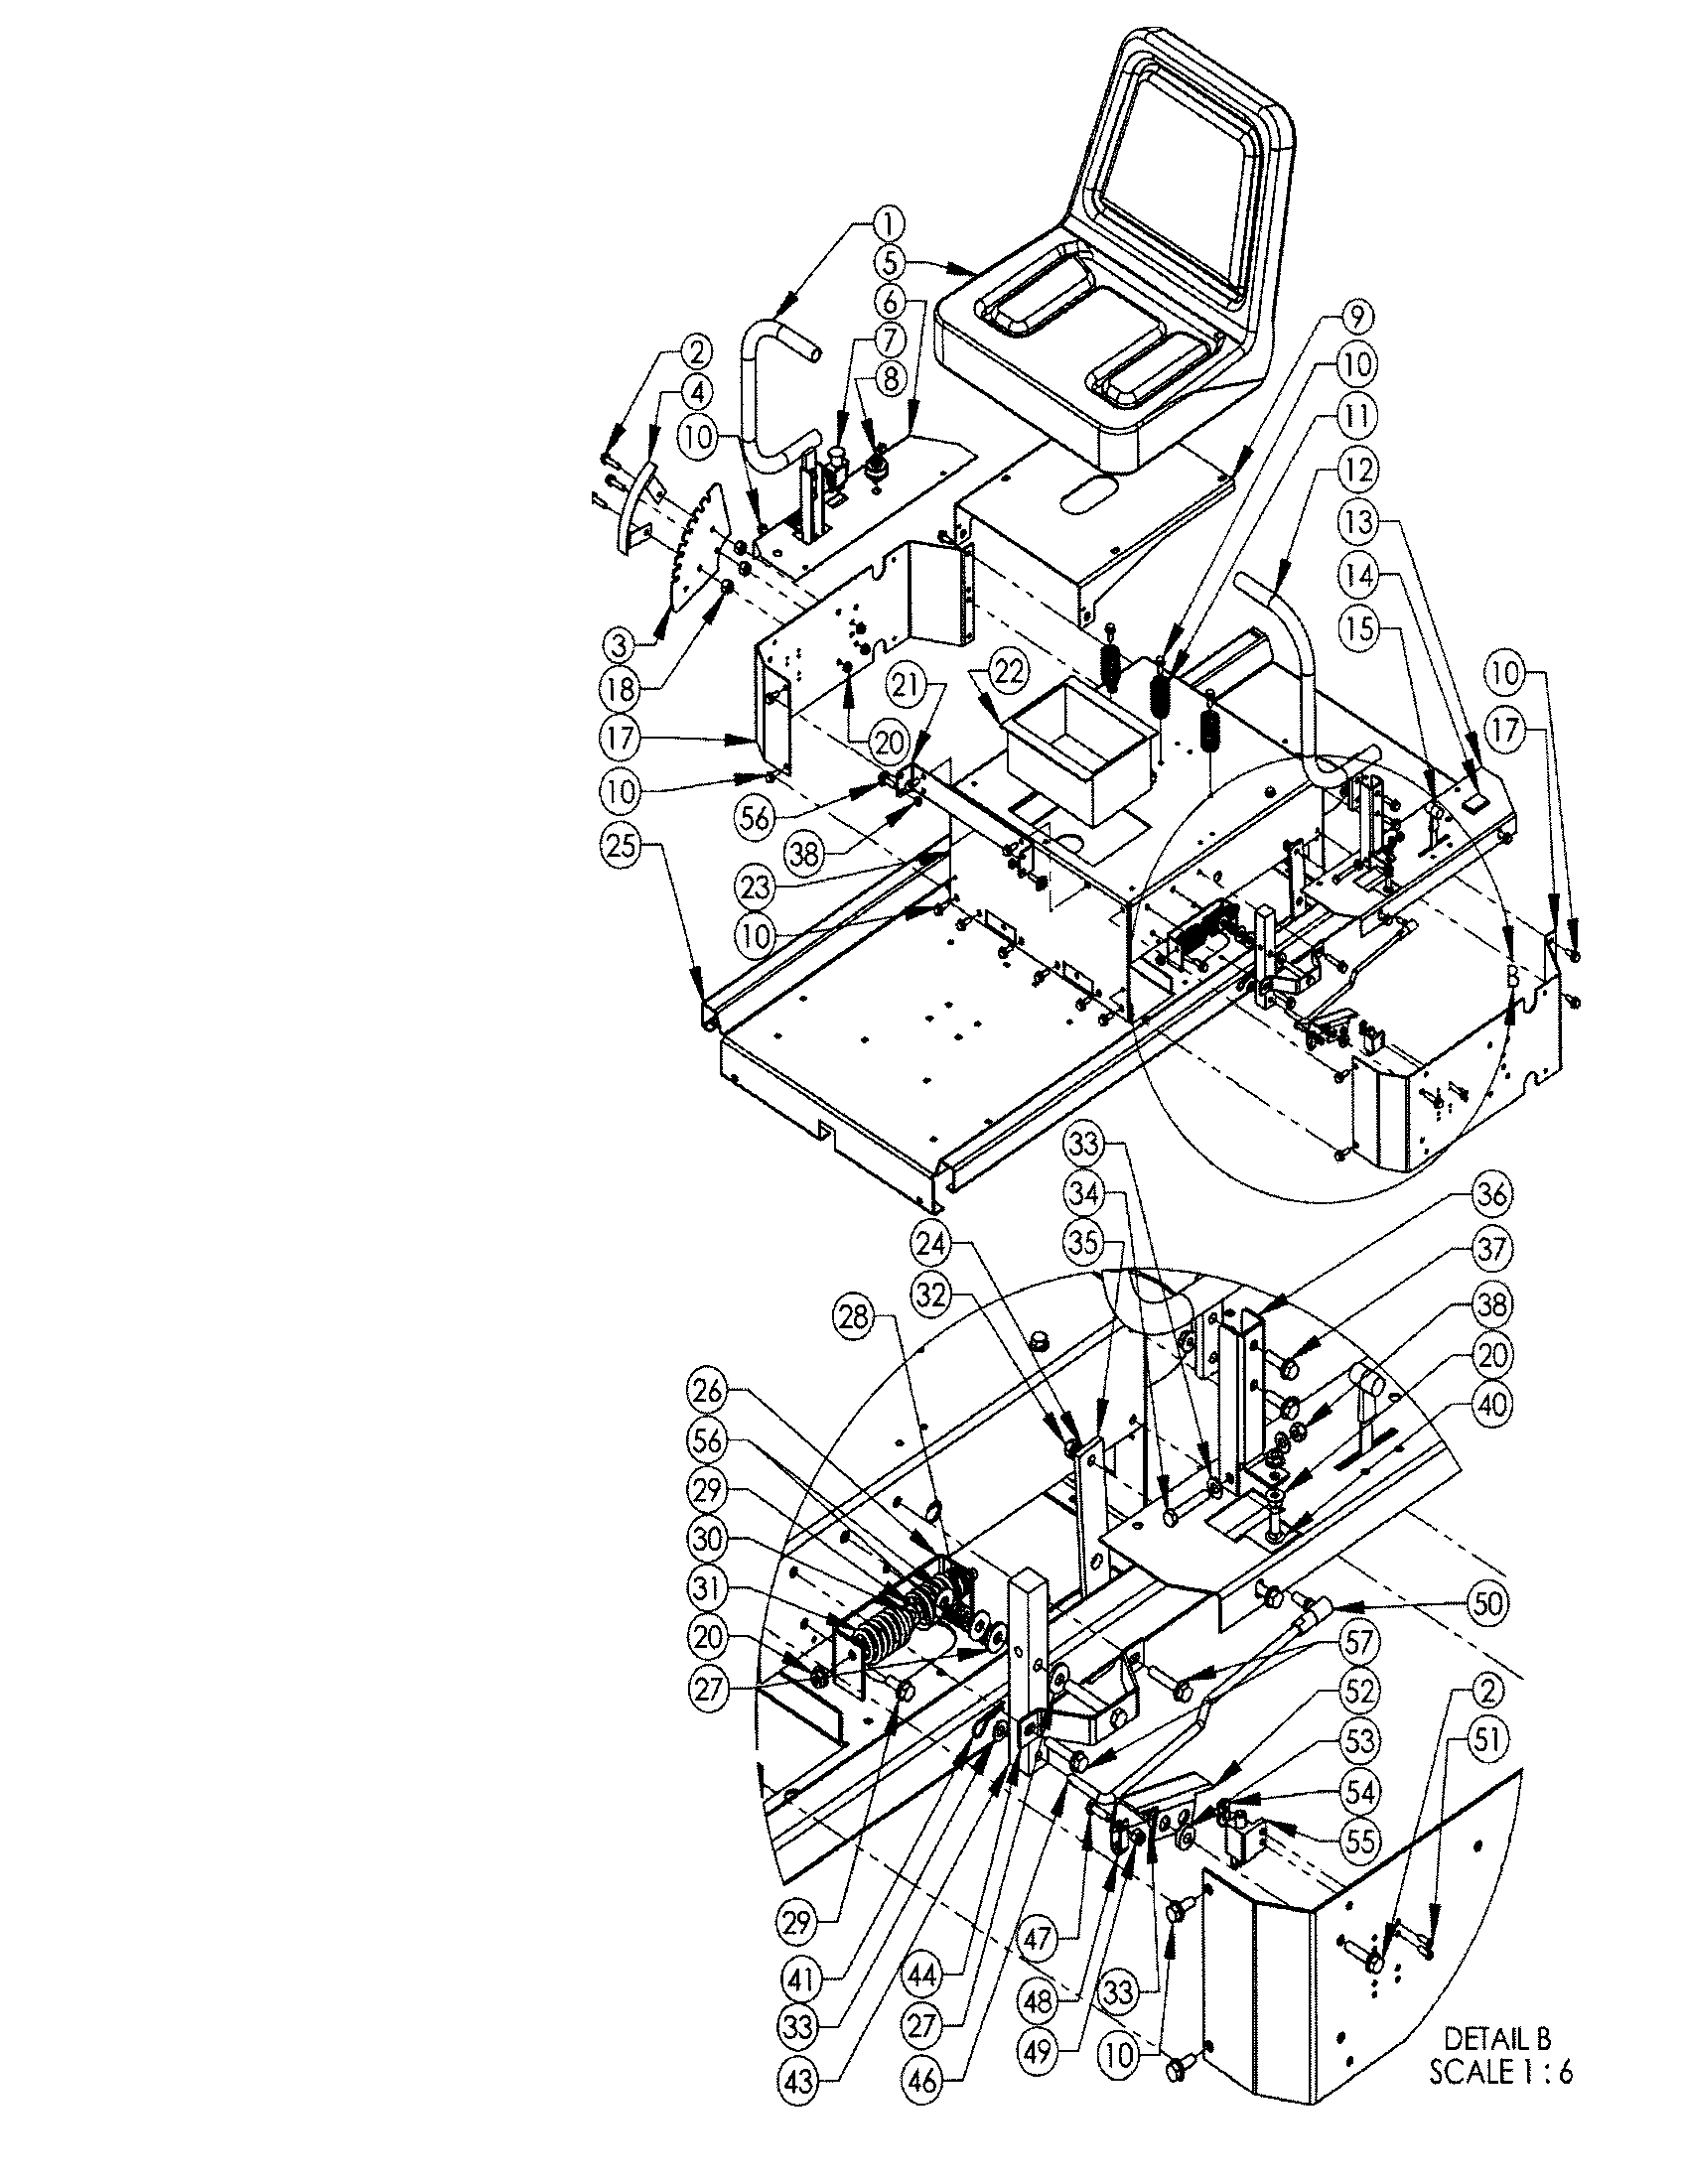 Z225 Wiring Diagram - Wiring Diagram Schemas